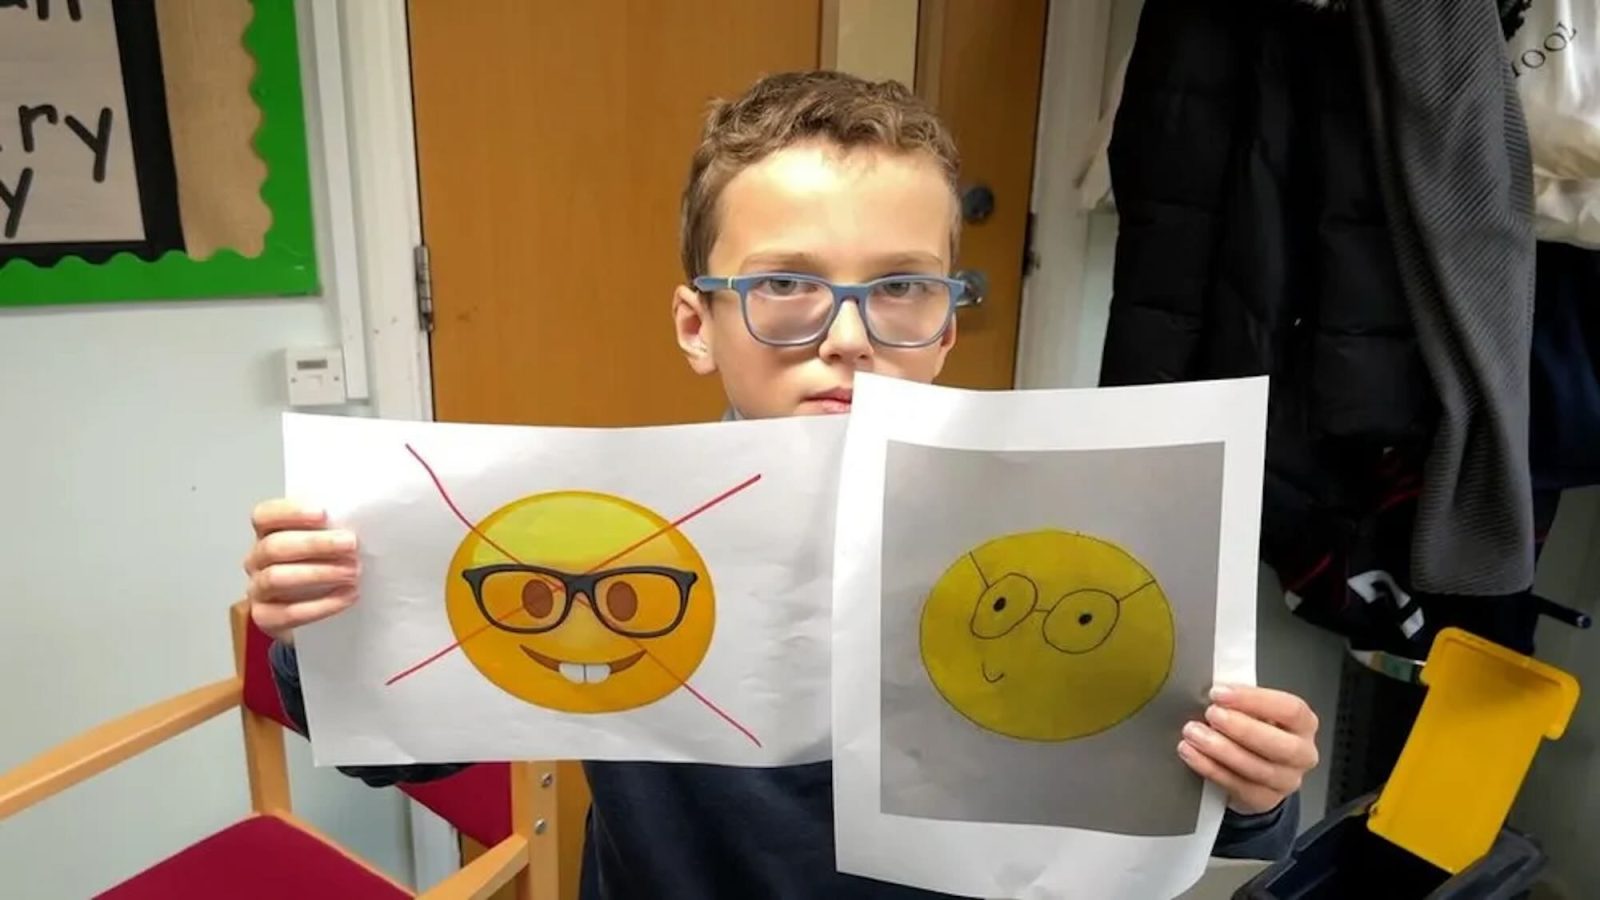 10-årig pojke ber Apple att ändra glasögon-emoji - han tycker att den är stötande